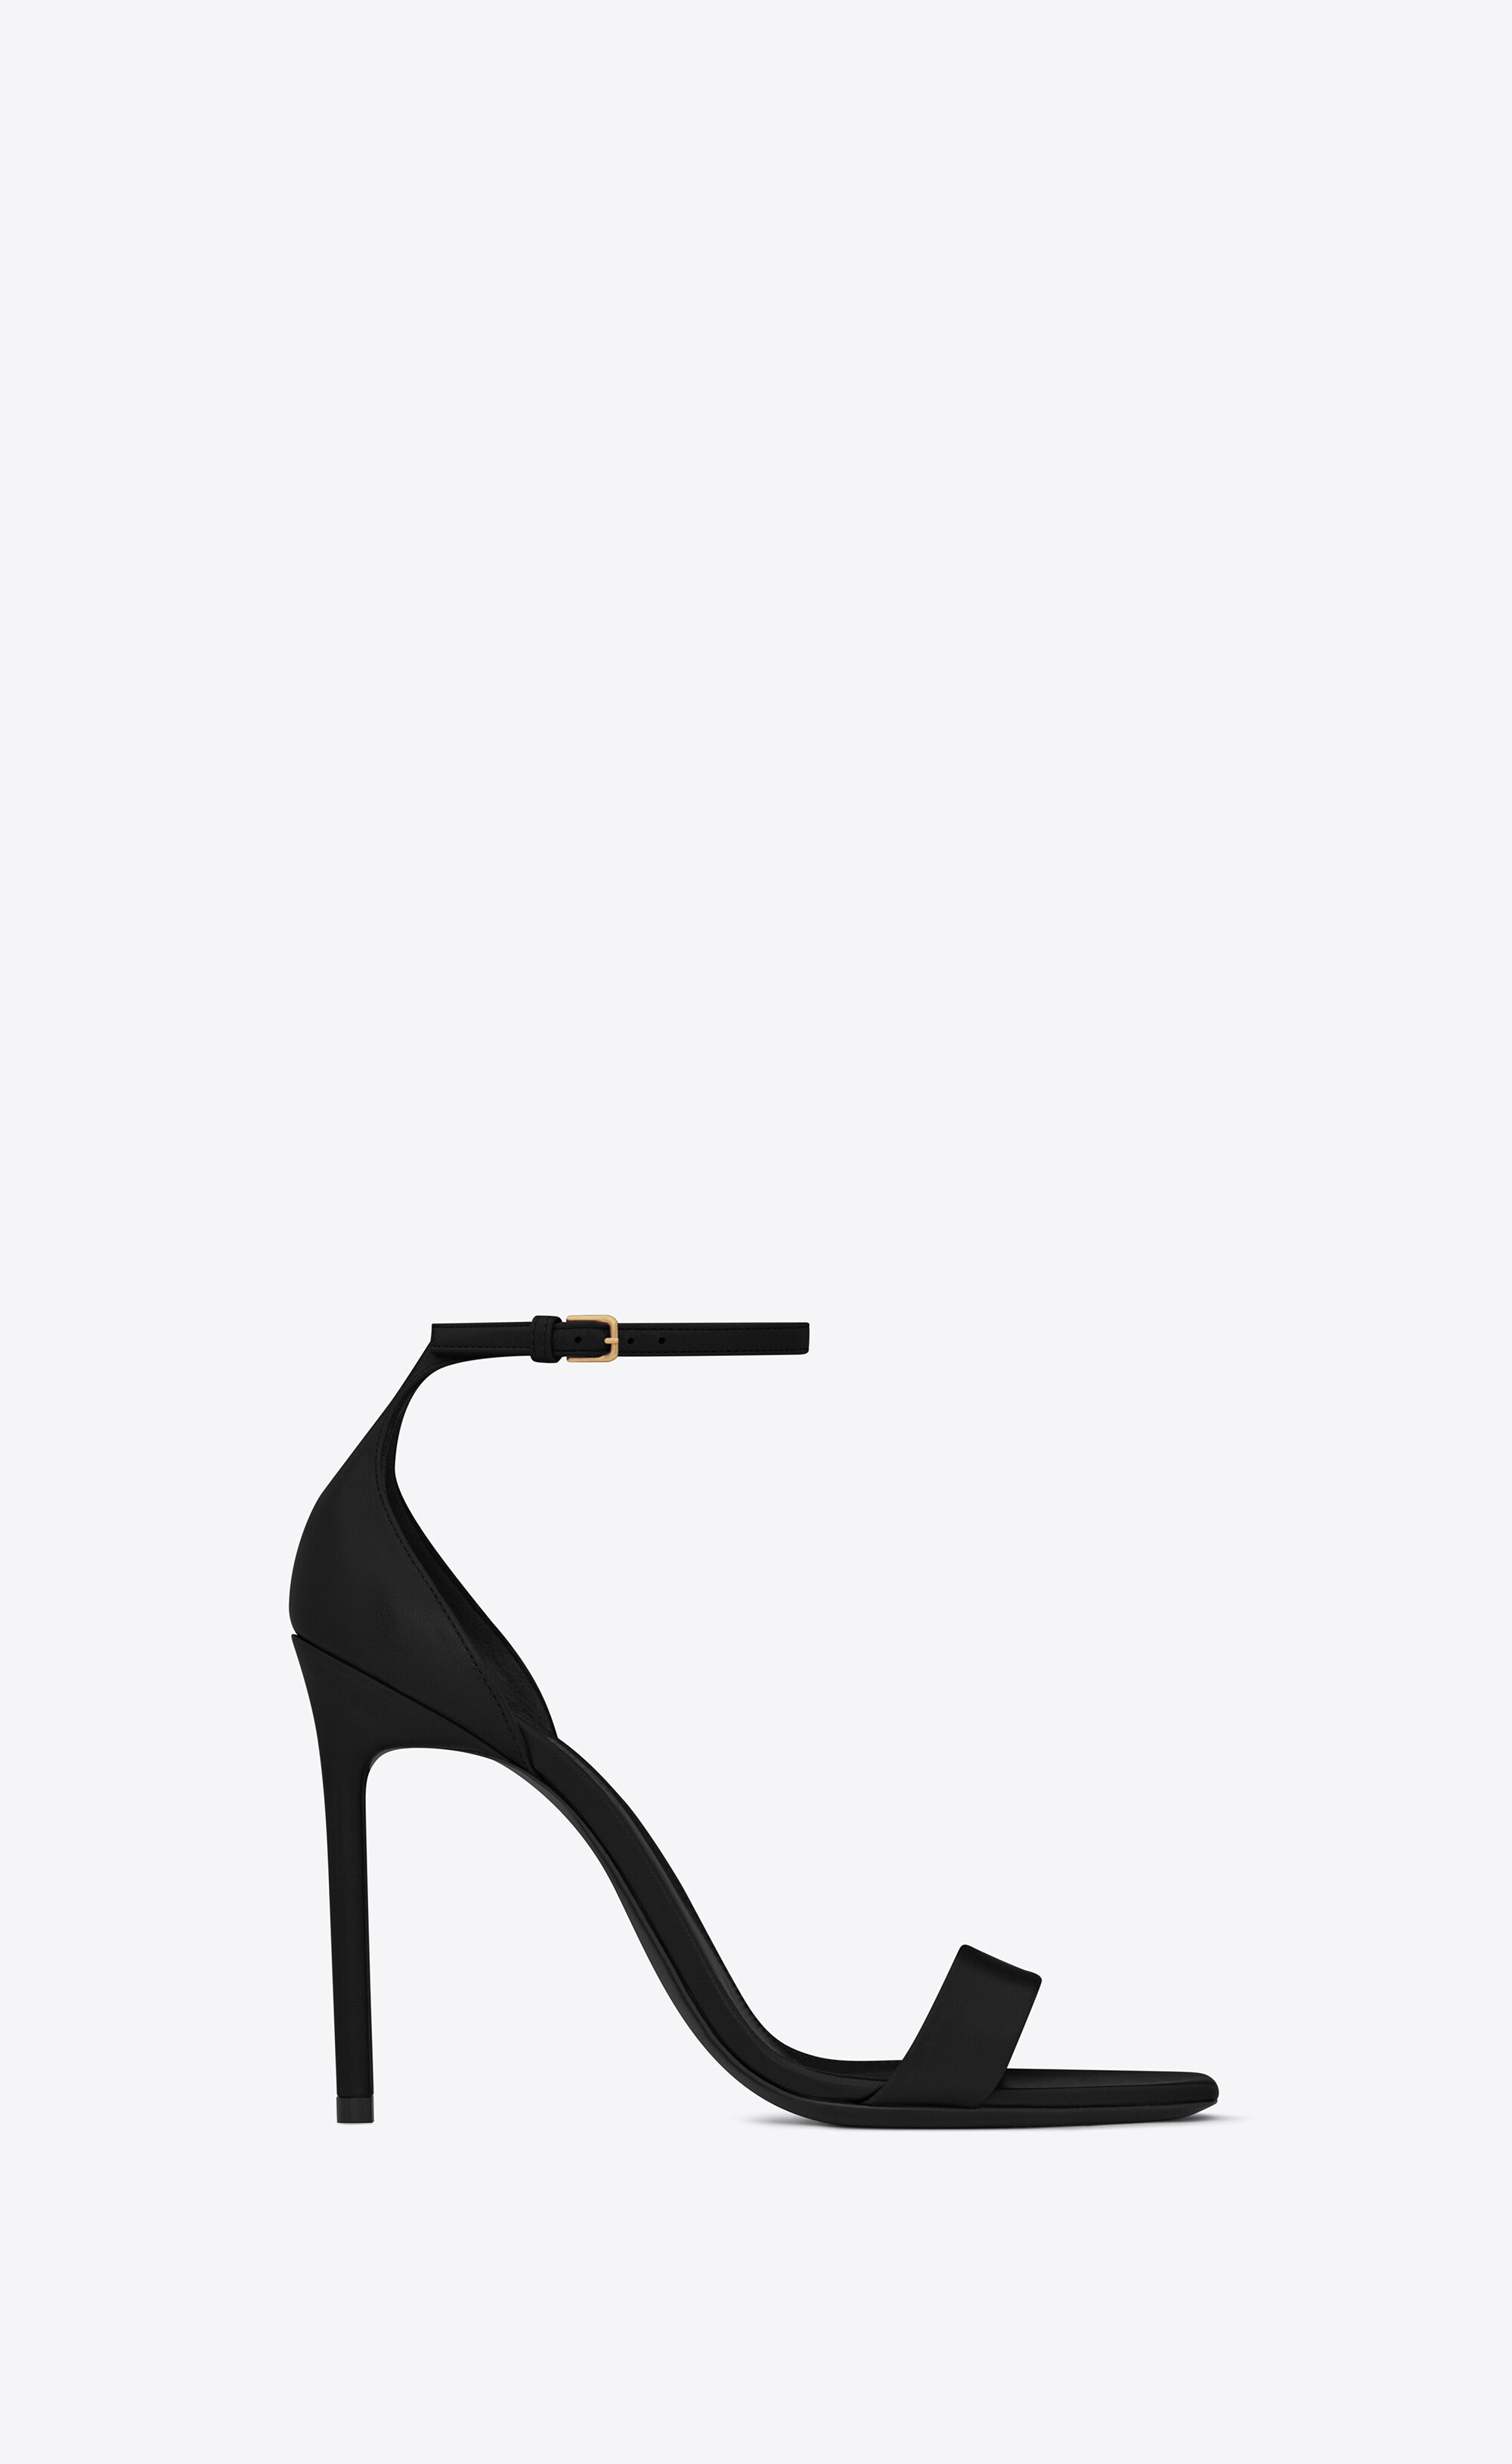 Yves Saint Laurent, Shoes, Ysl Pumps